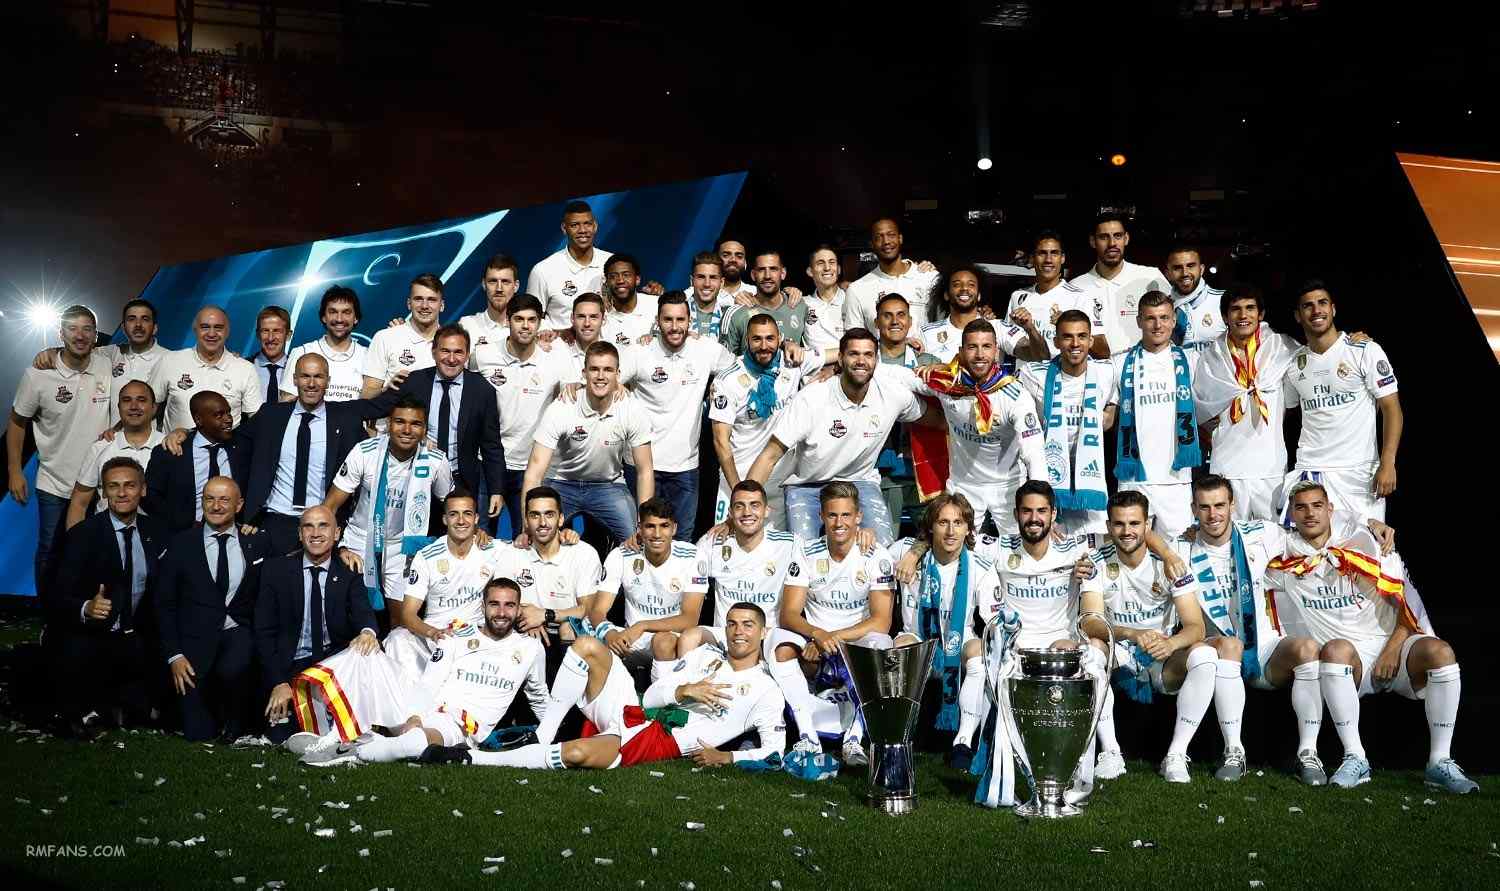 皇马2018欧冠冠军全体成员纪念图片